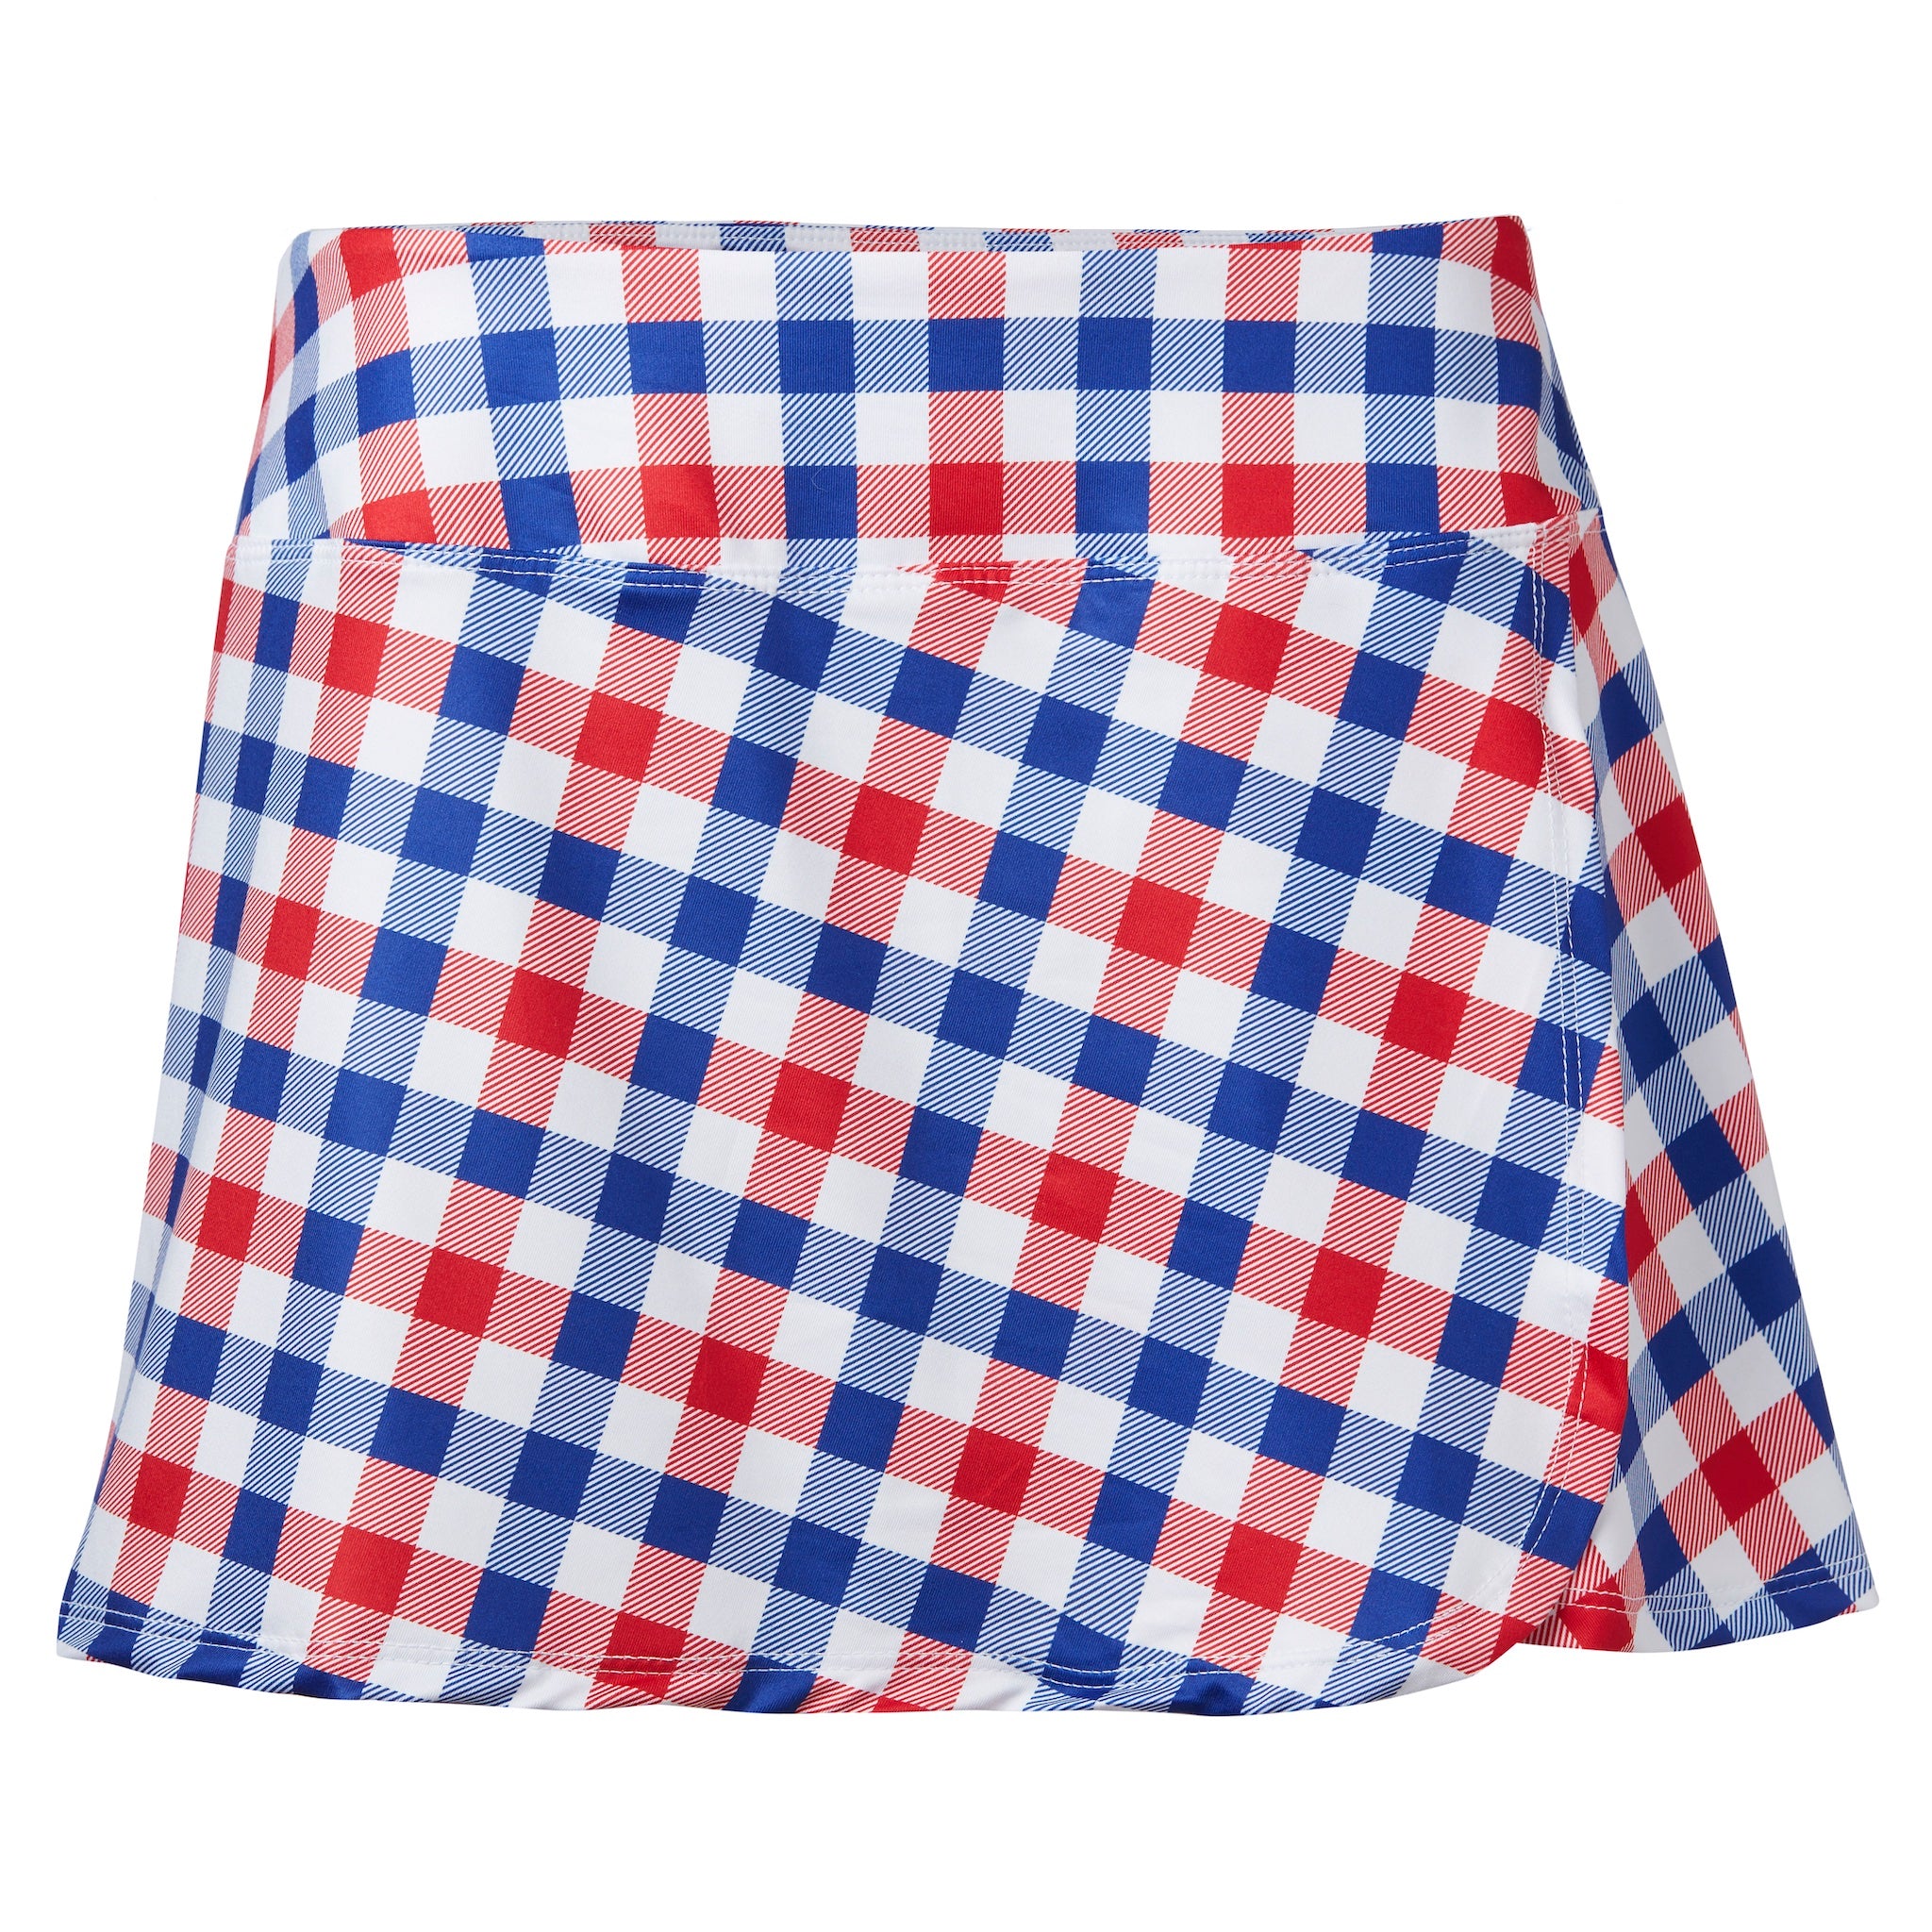 Crush Skirt-Red/White/Blue Gingham